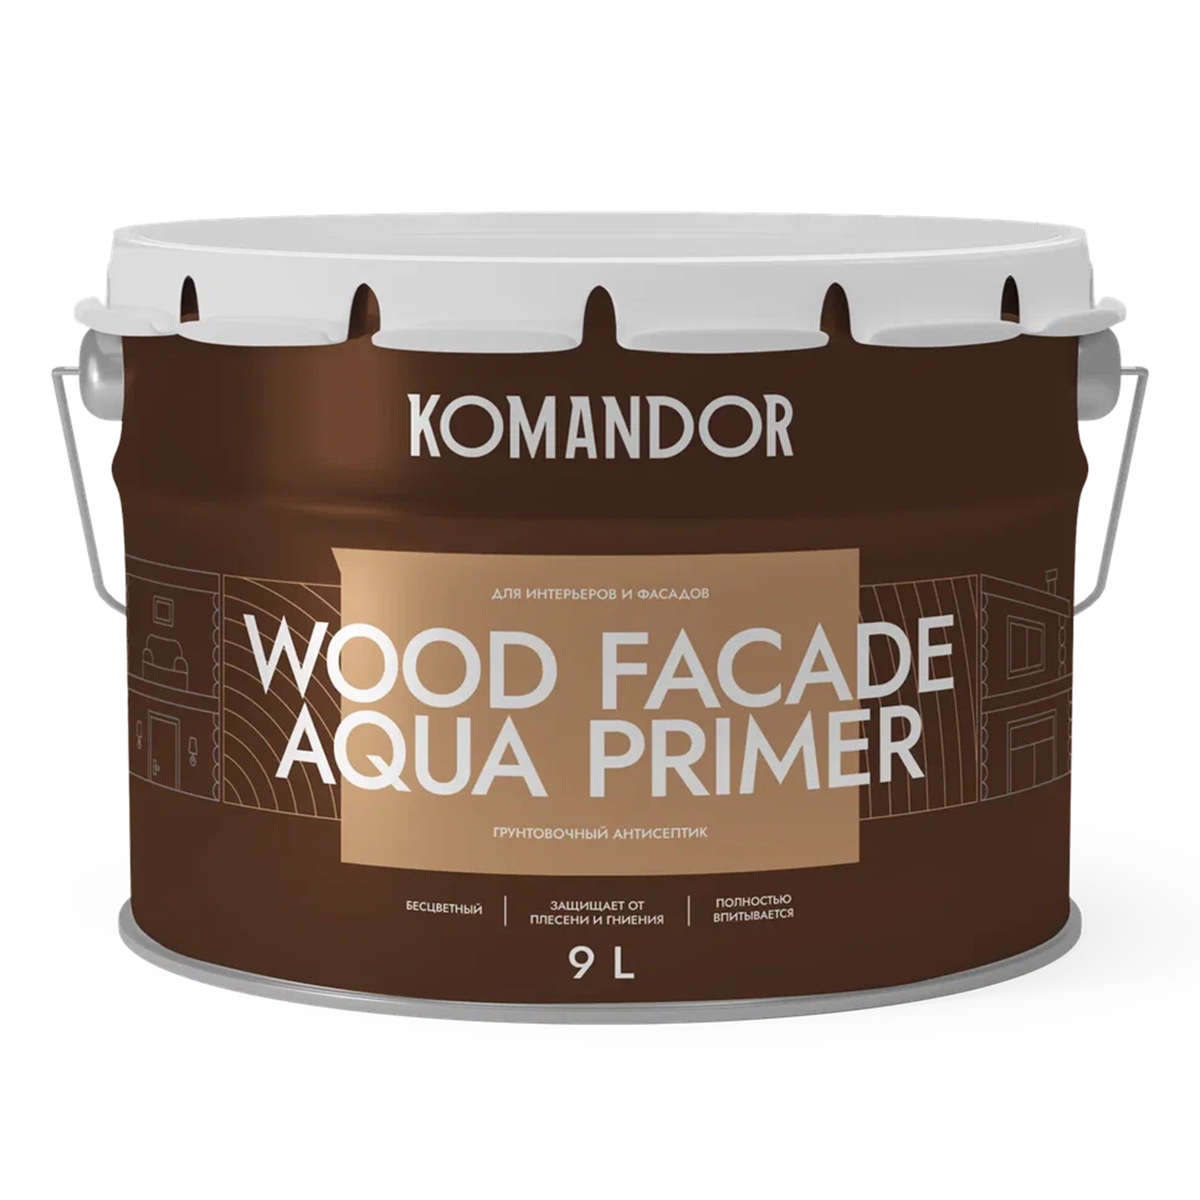 Грунт-антисептик для дерева Komandor Wood Facade Aqua Primer, 9 л антисептик грунт для плит osb prosept